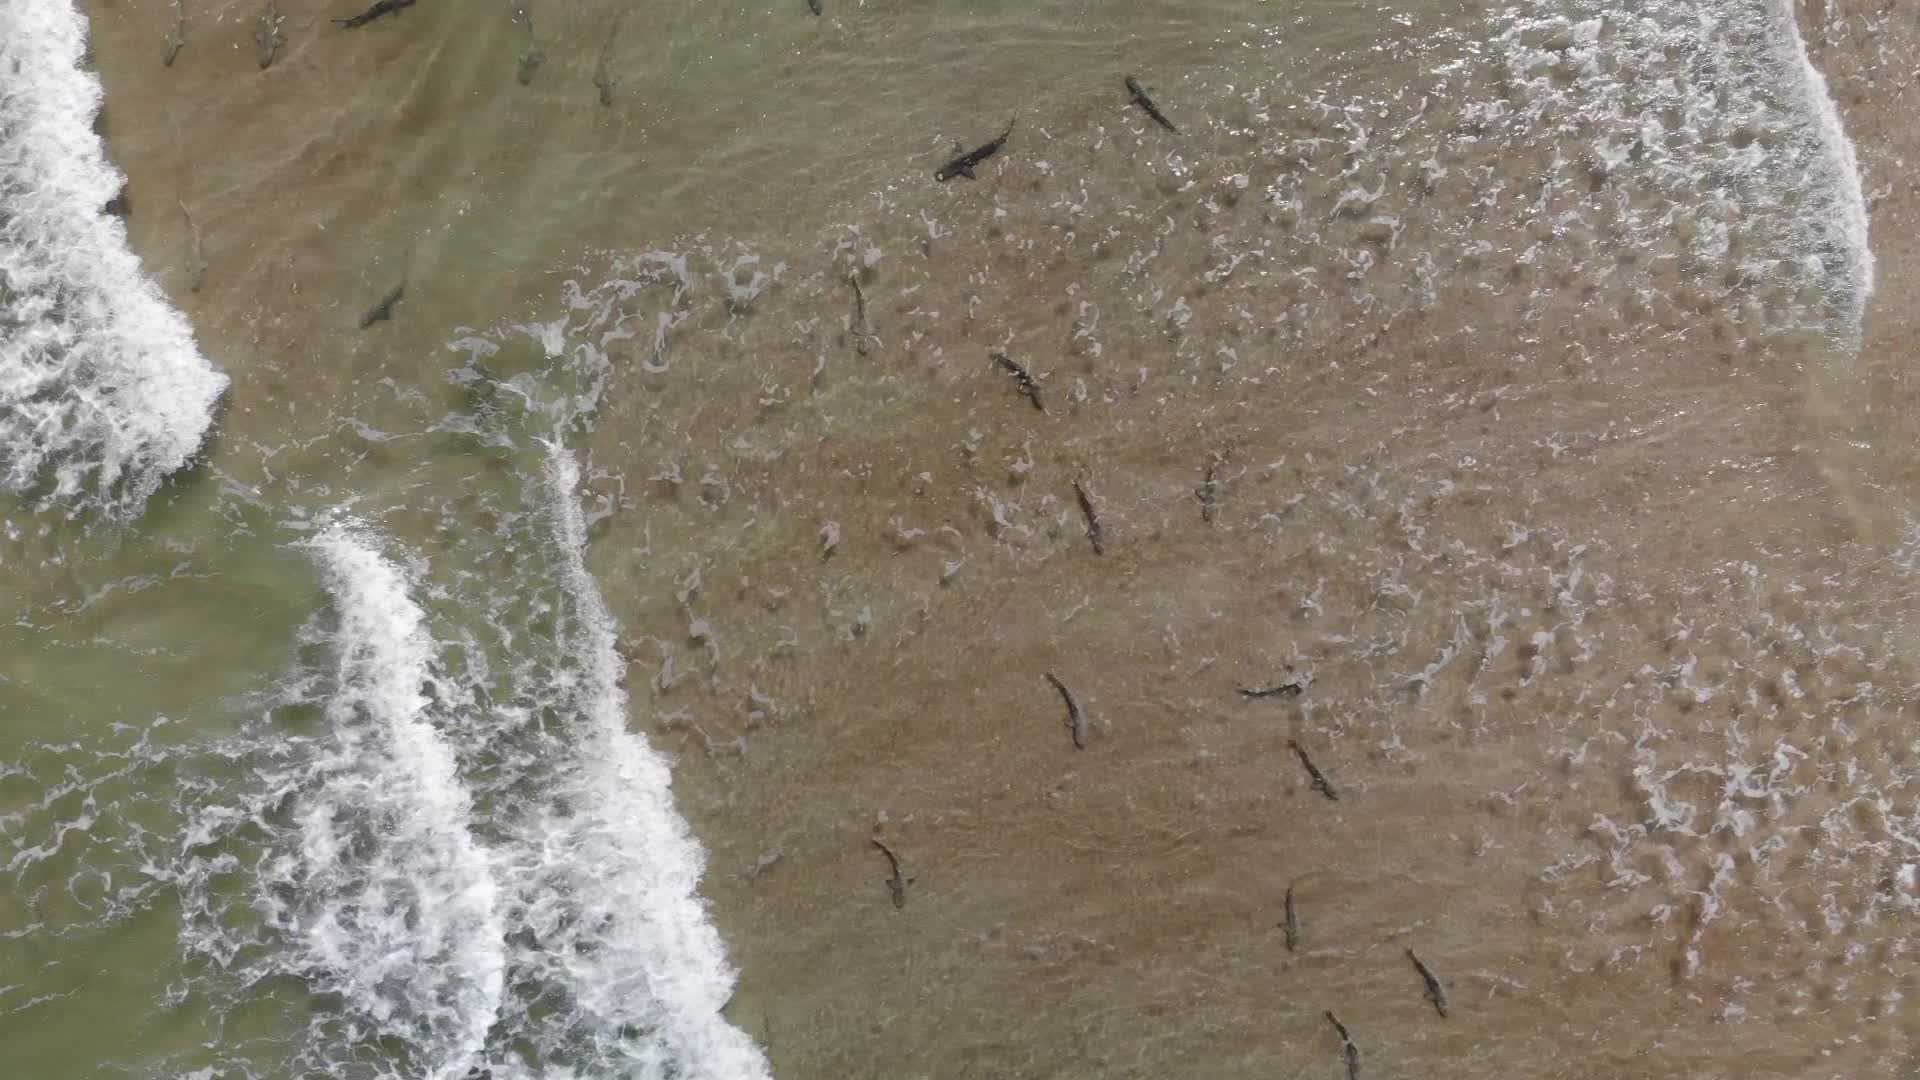 ¡Gracias a un dron! Surfista conoció la gran cantidad de tiburones que nadaban a su alrededor